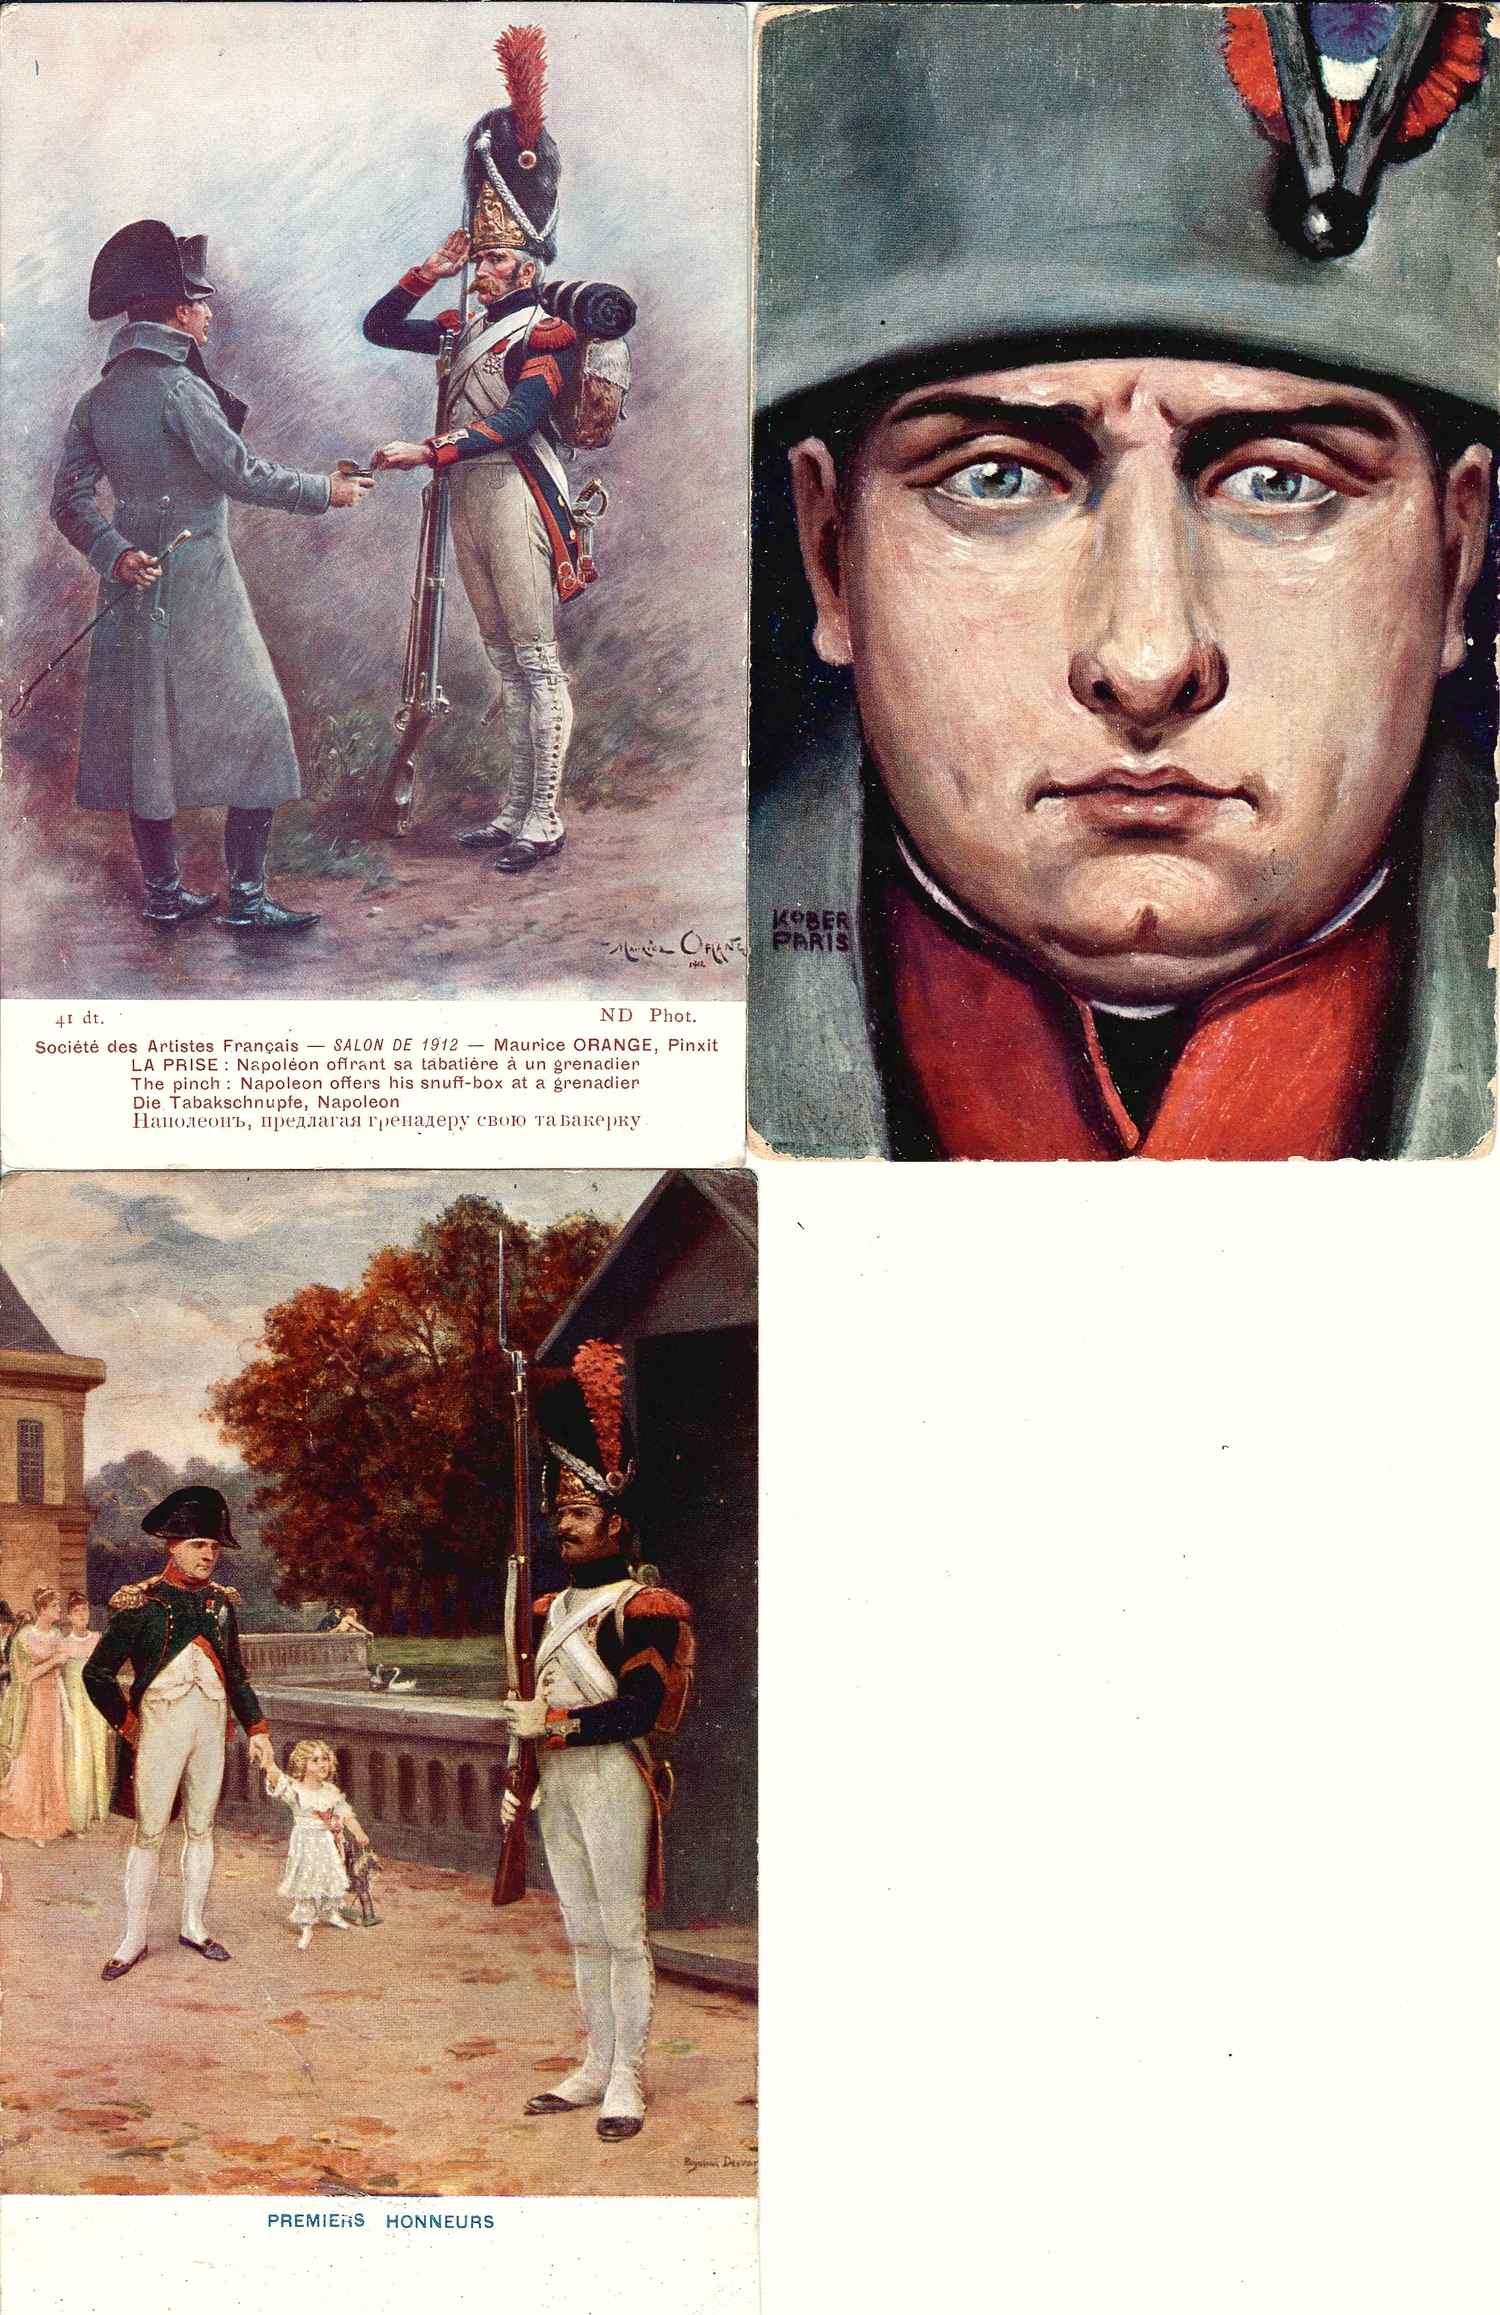 32 открытки «Наполеоника», «Отечественная война 1812 года». Россия, Зап. Европа, нач. XX века.